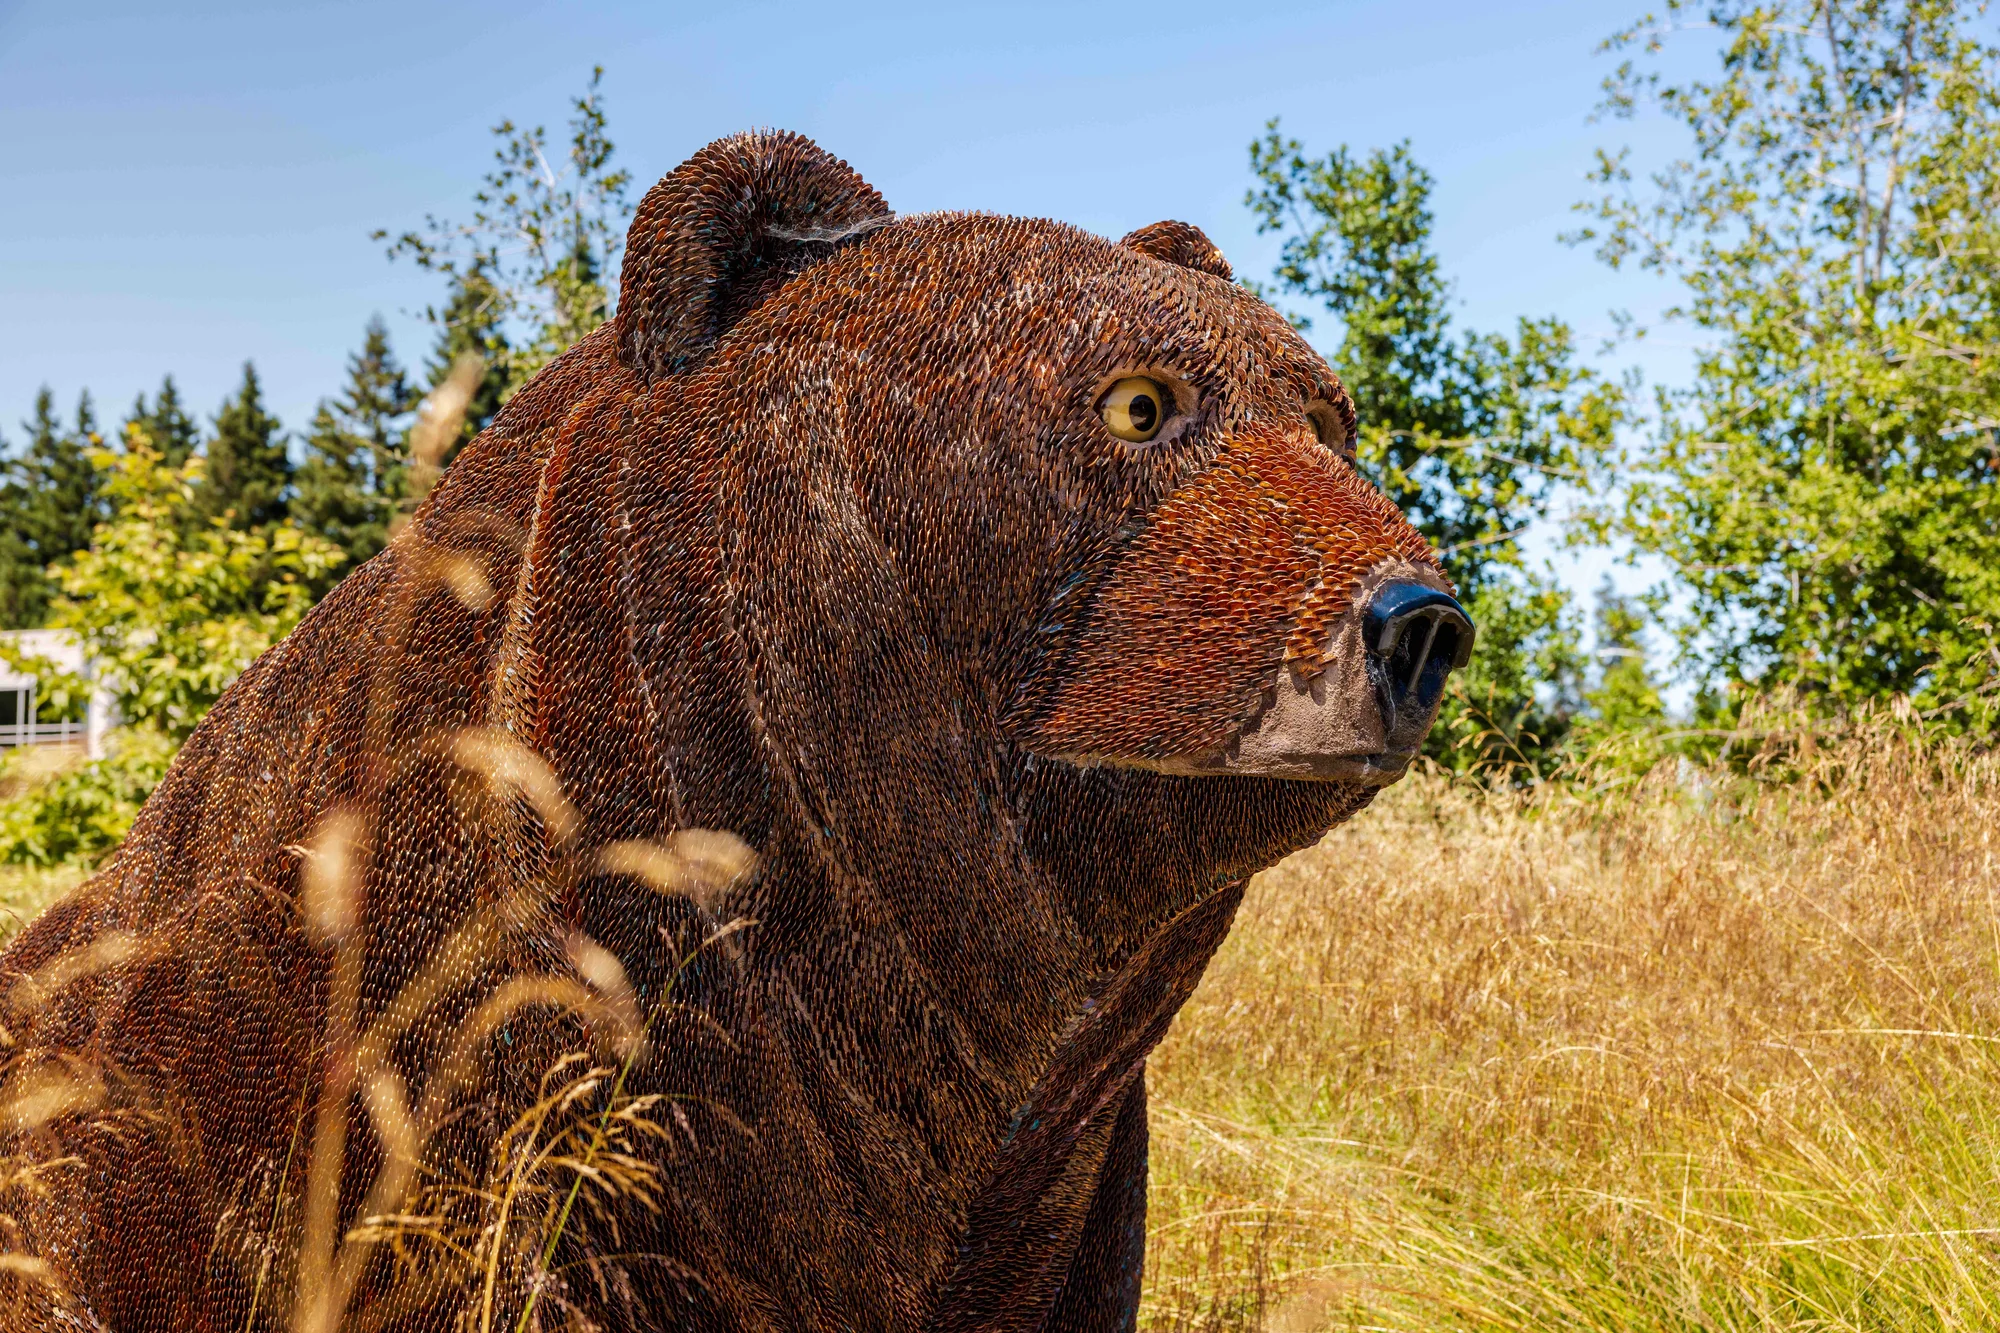 캘리포니아 그리즐리 곰을 표현한 작품 ‘Curious’의 이미지.